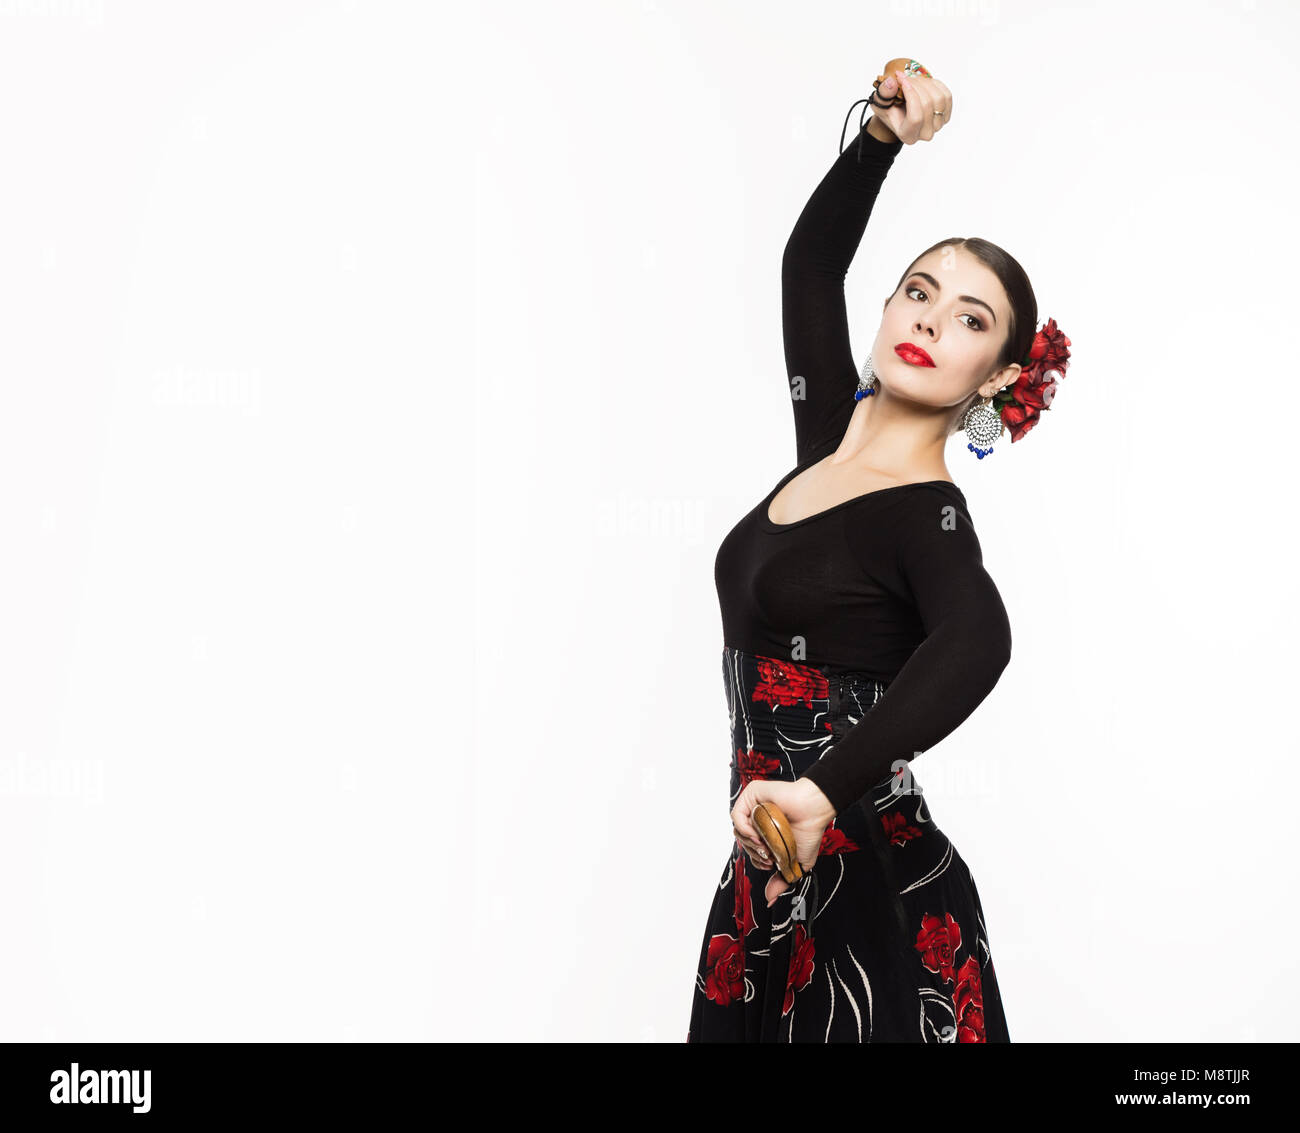 Jeune fille espagnole flamenco dancer sur un fond clair. L'espace libre pour votre texte Banque D'Images